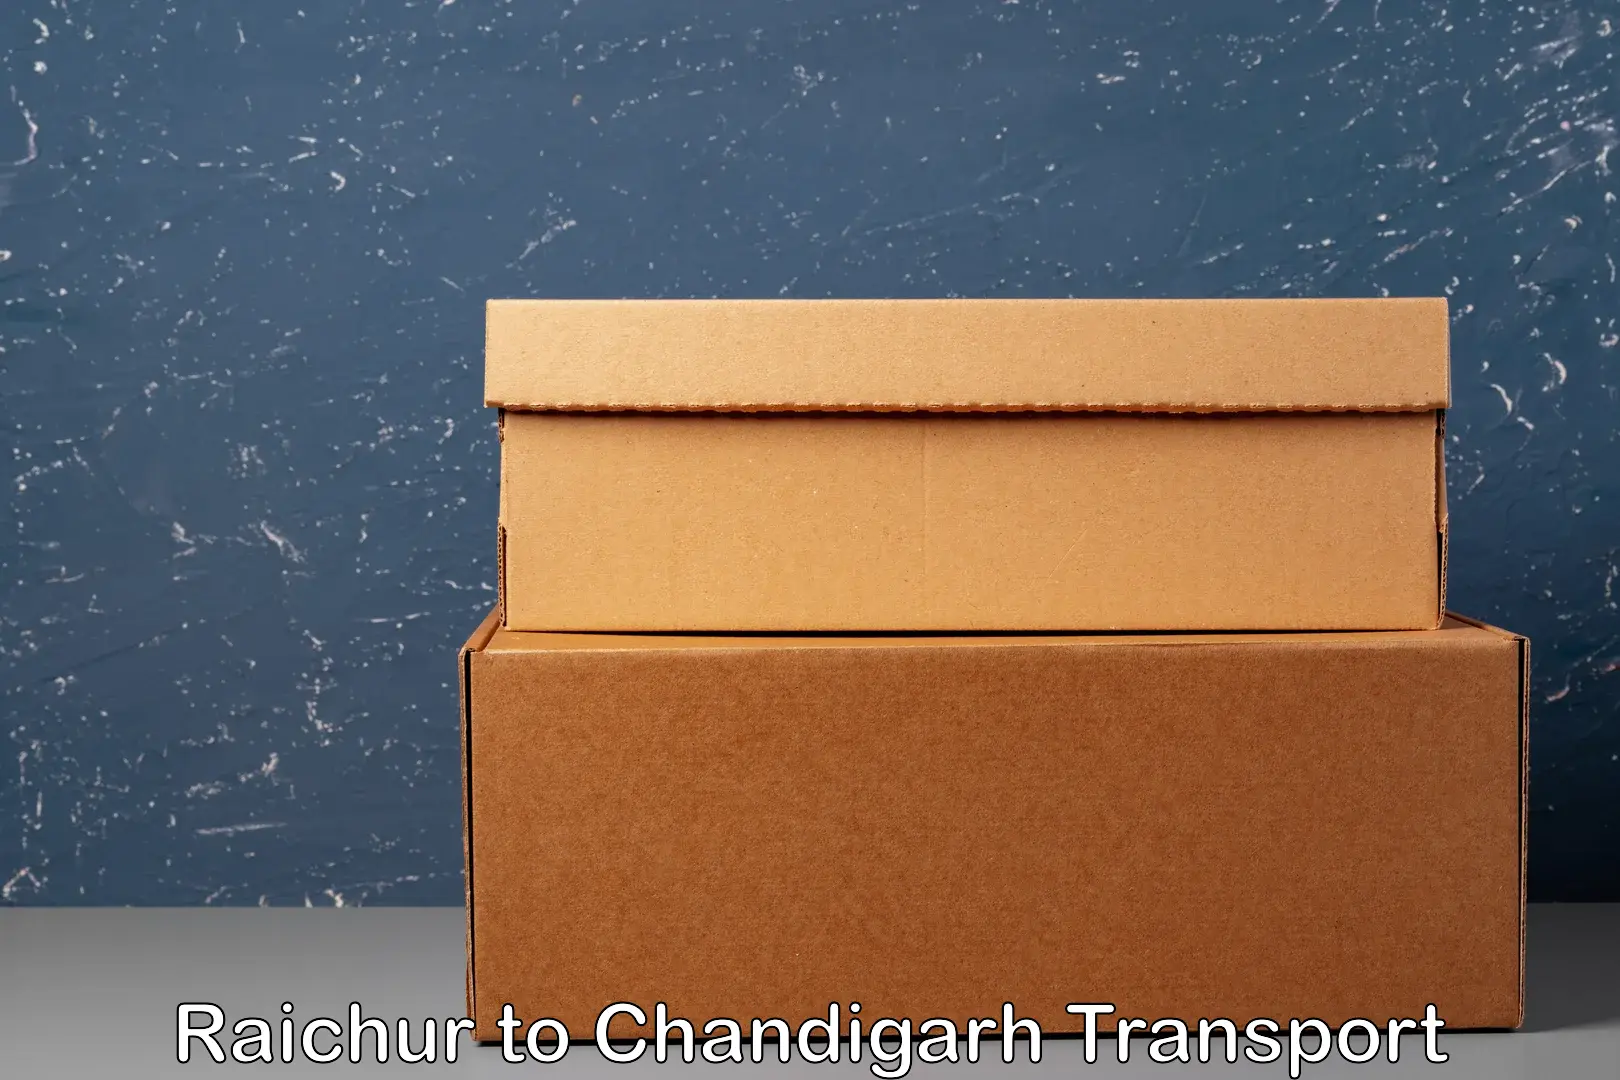 Furniture transport service Raichur to Chandigarh